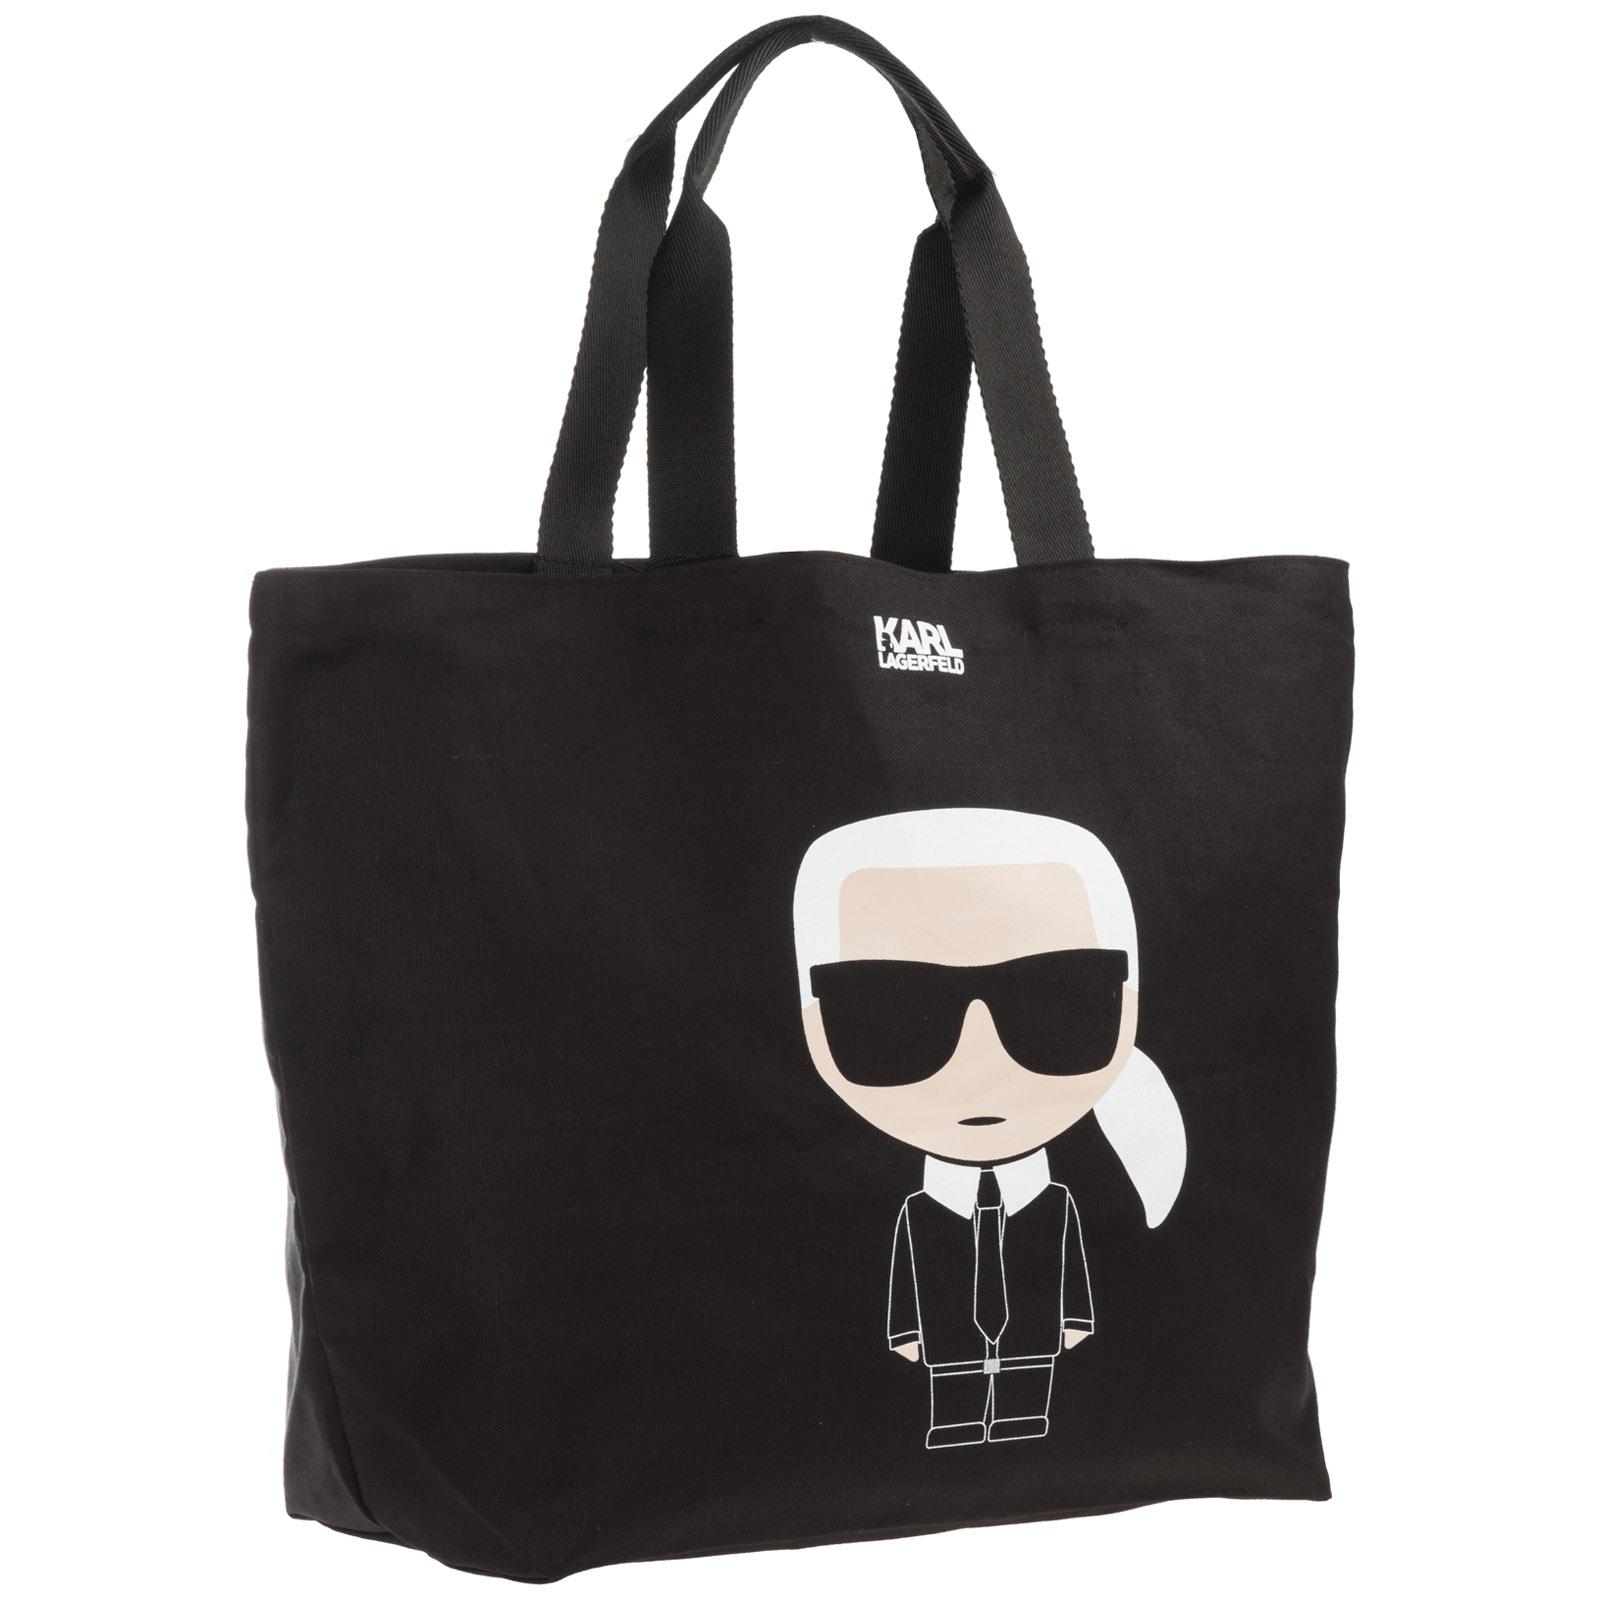 Karl Lagerfeld K/ikonik Canvas Tote Bag in Nero (Black) - Lyst